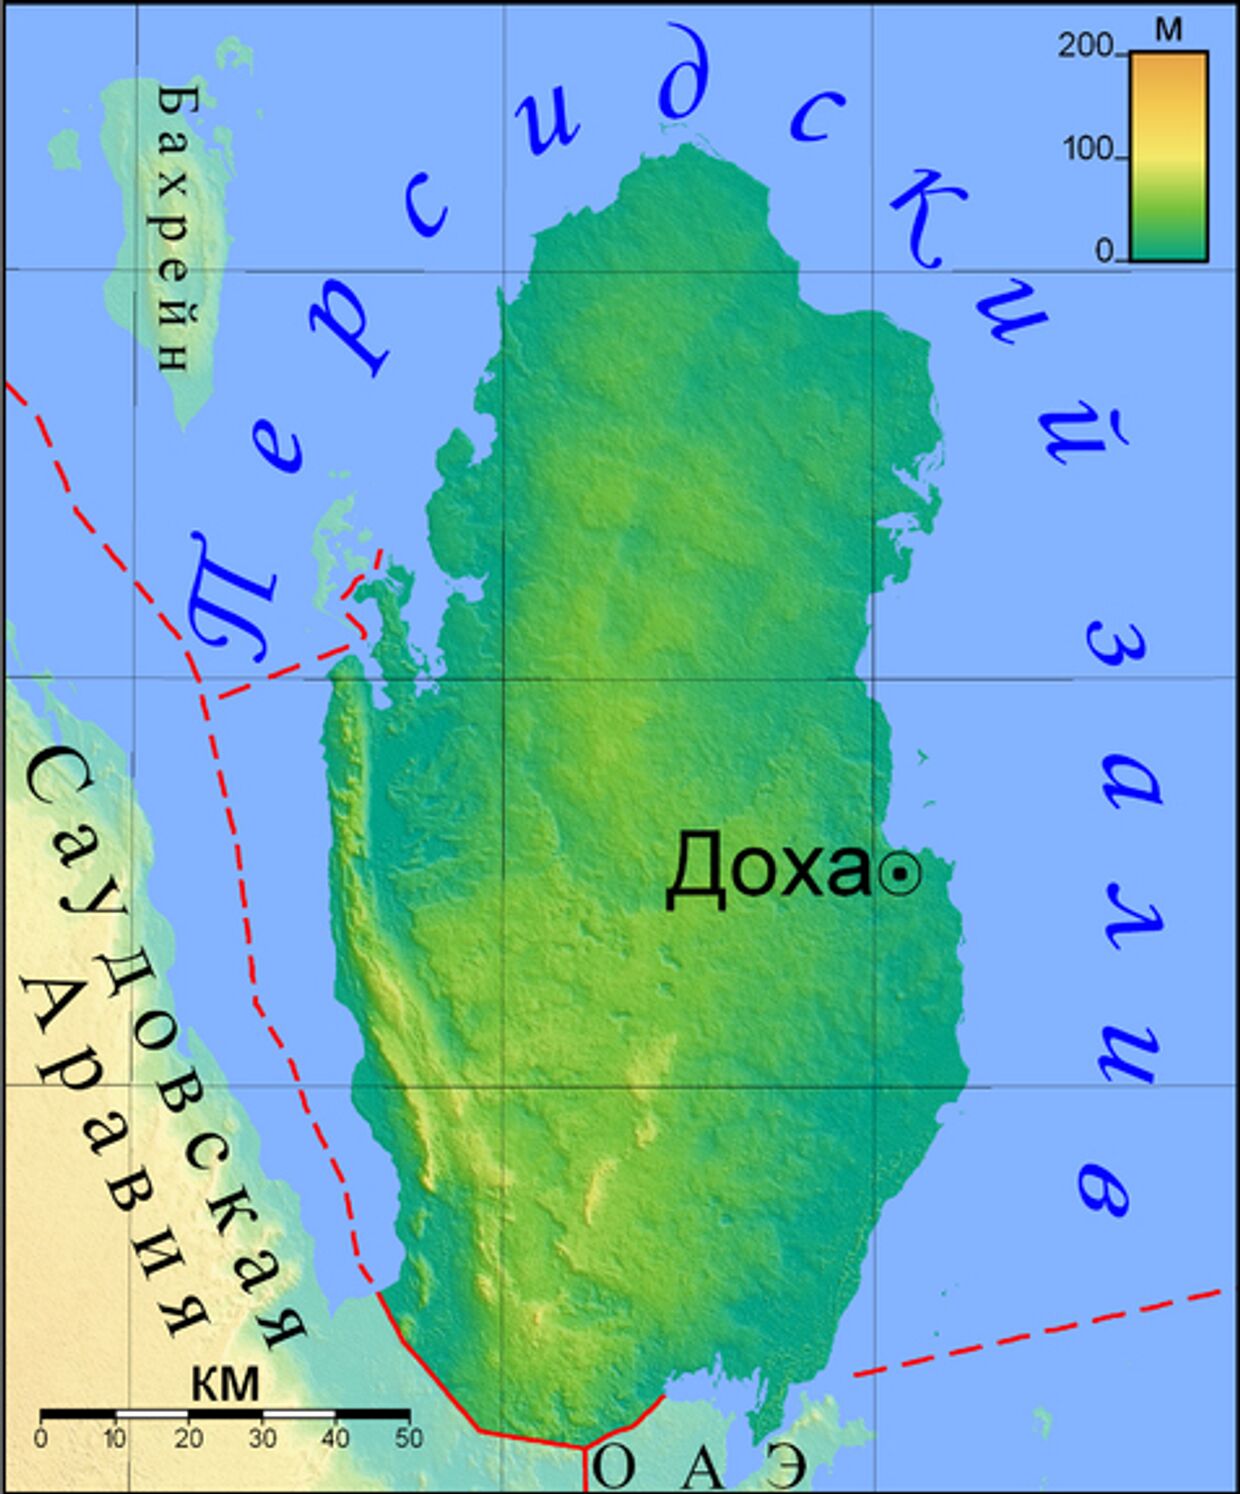 Карта Катара